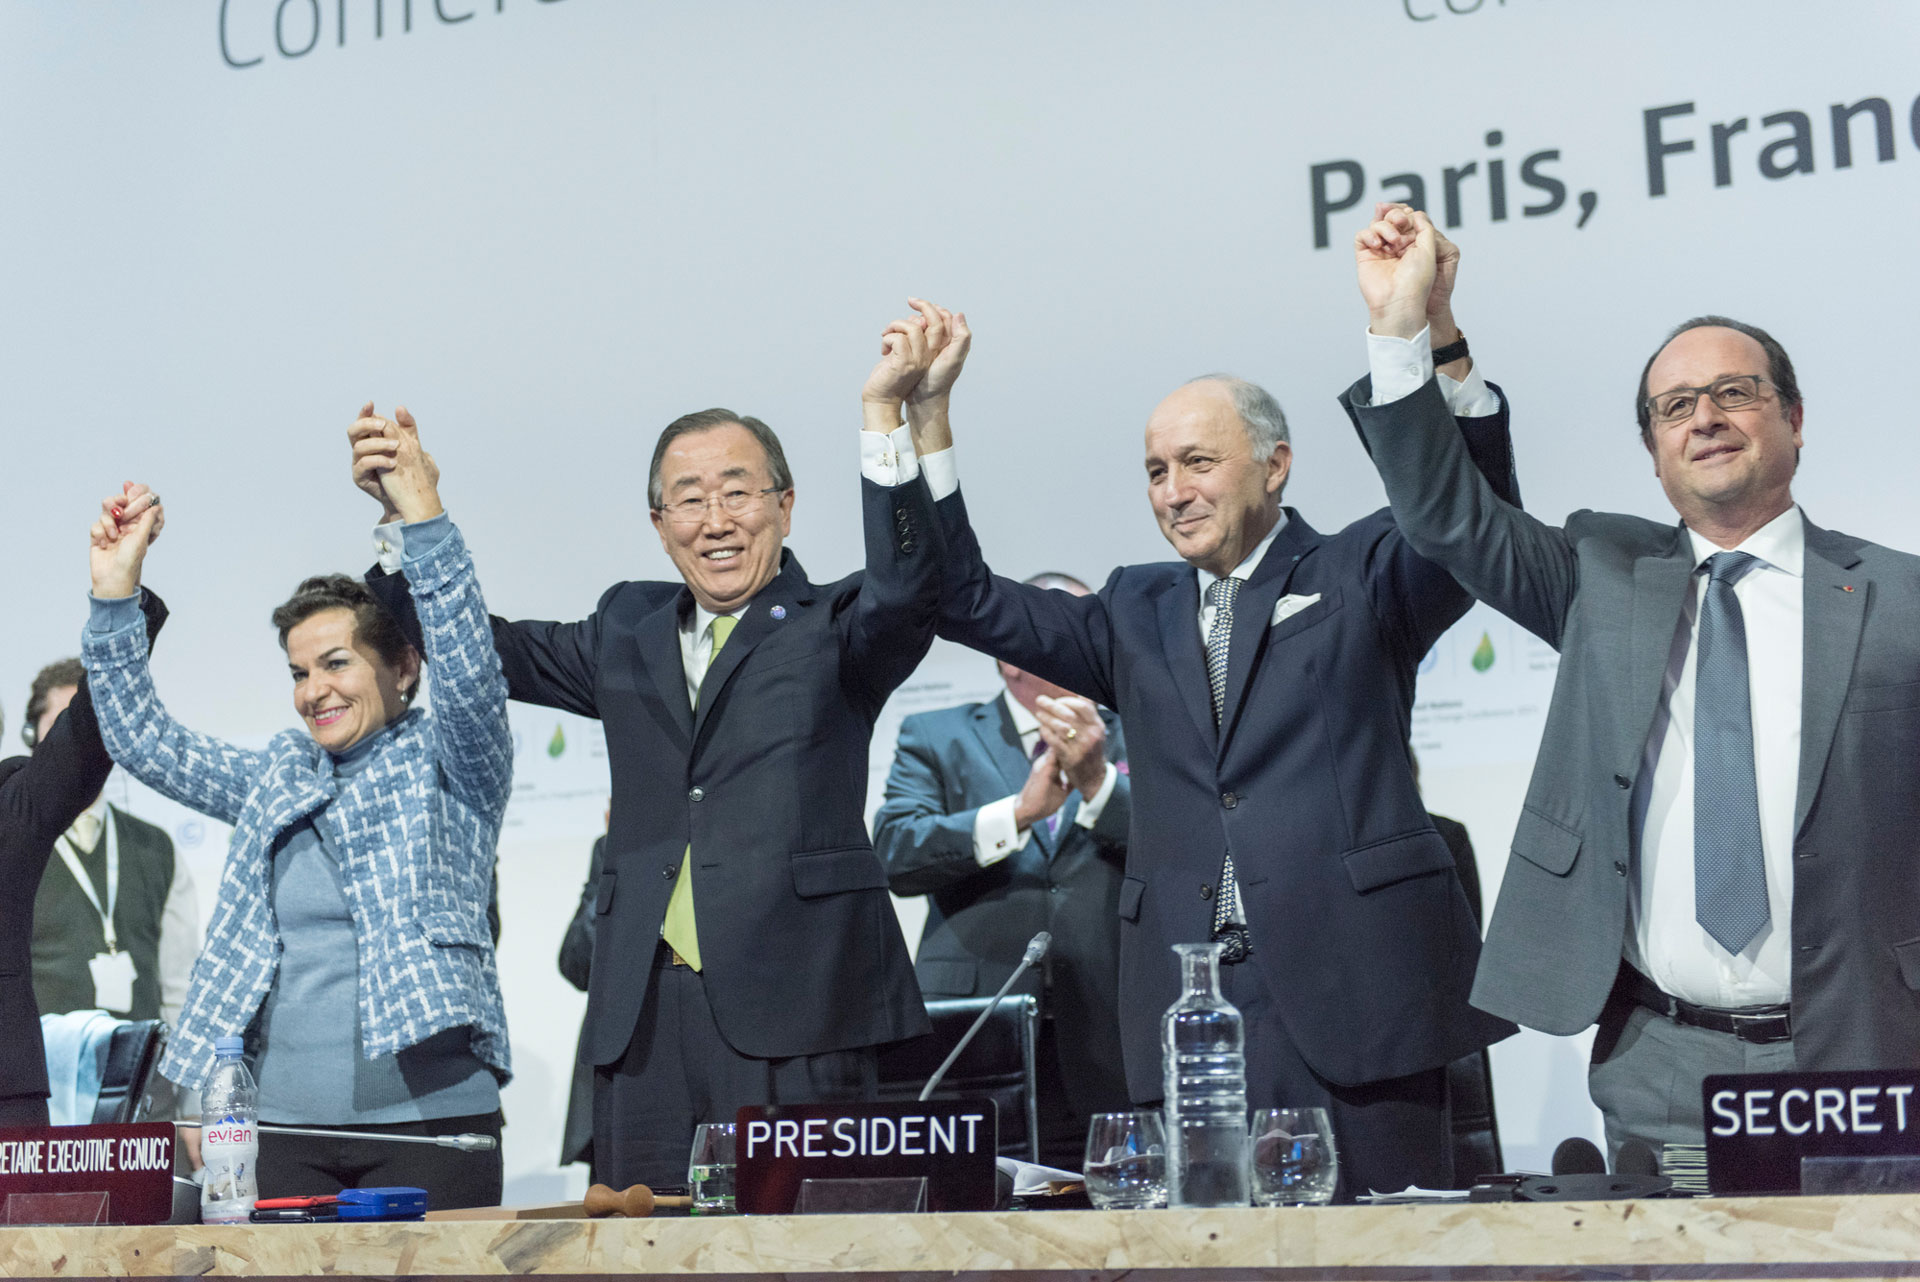 <p><sub>Der ehemalige Generalsekretär Ban Ki-moon (zweiter von links), Christiana Figueres (links), Exekutivsekretärin der UN-Klimarahmenkonvention (UNFCCC), Laurent Fabius (zweiter von rechts), Außenminister Frankreichs und Präsident der UN-Klimakonferenz in Paris (COP21), und François Hollande (rechts), Präsident Frankreichs, feiern nach der historischen Verabschiedung des Pariser Abkommens zum Klimawandel.</sub></p>